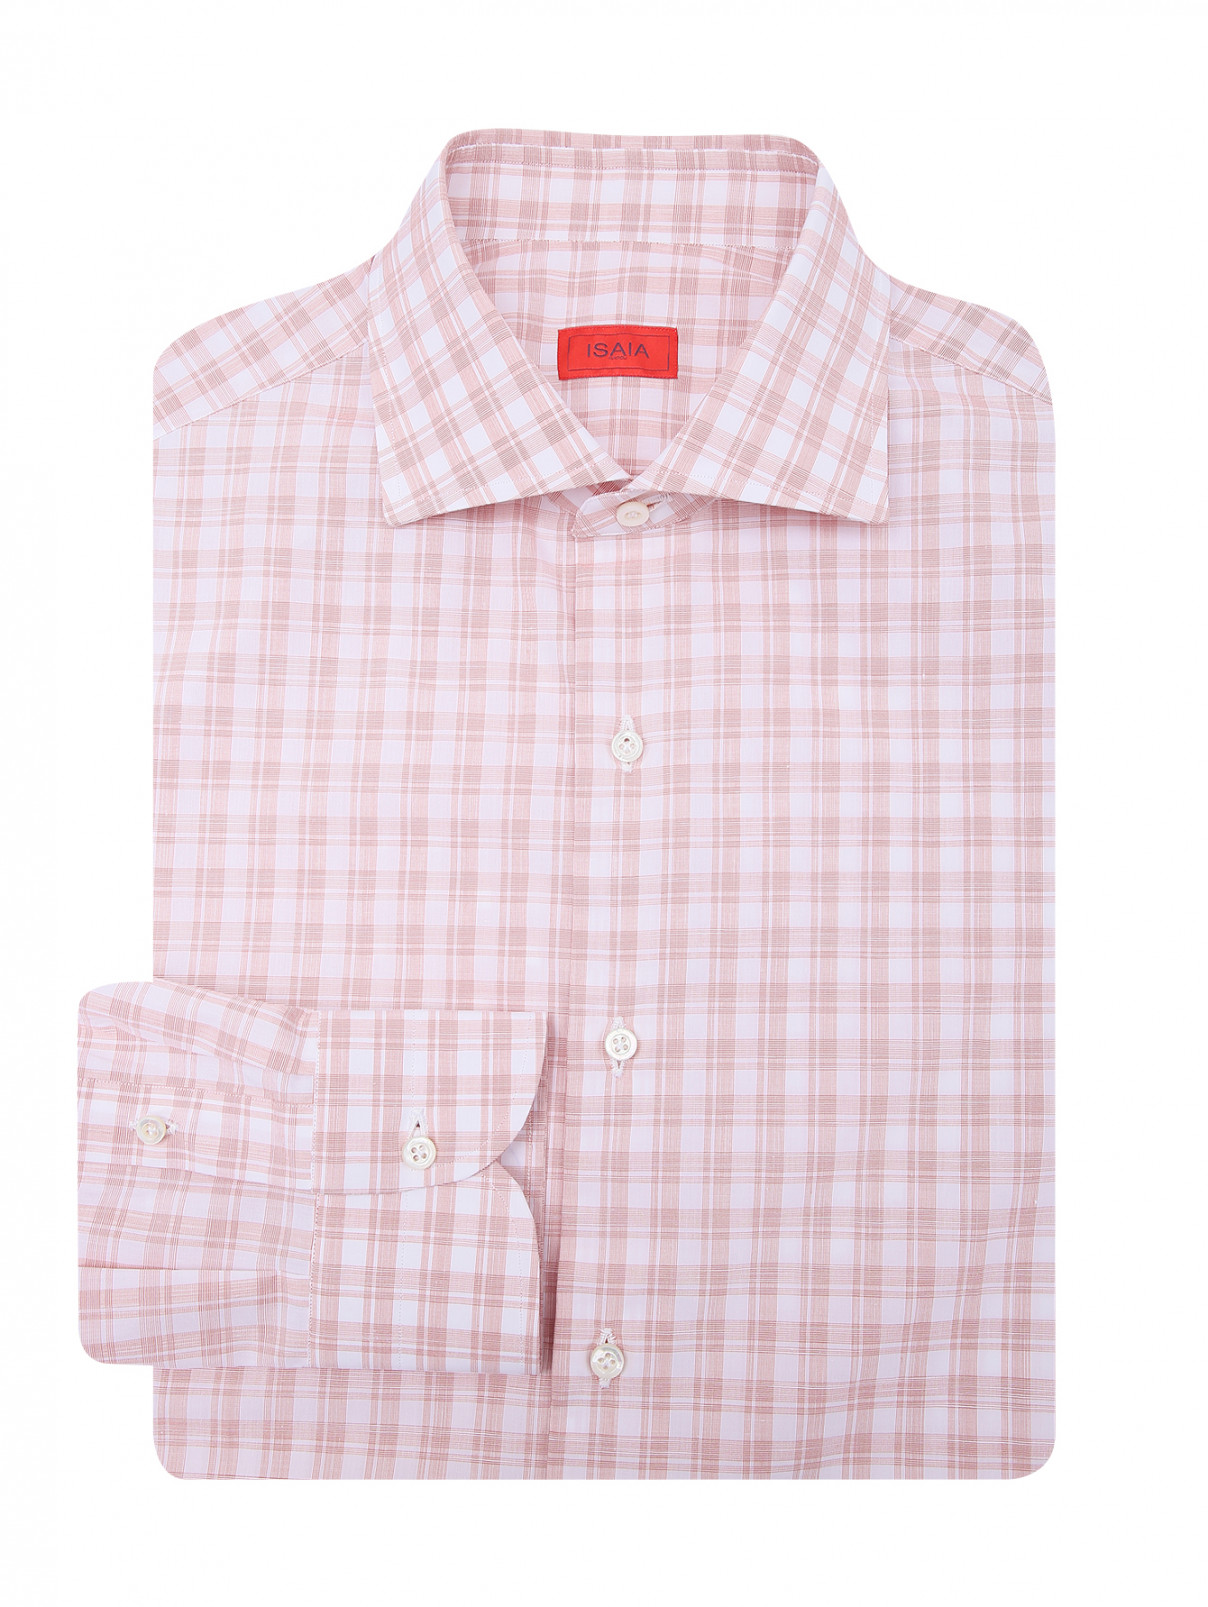 Рубашка из хлопка с узором клетка Isaia  –  Общий вид  – Цвет:  Розовый